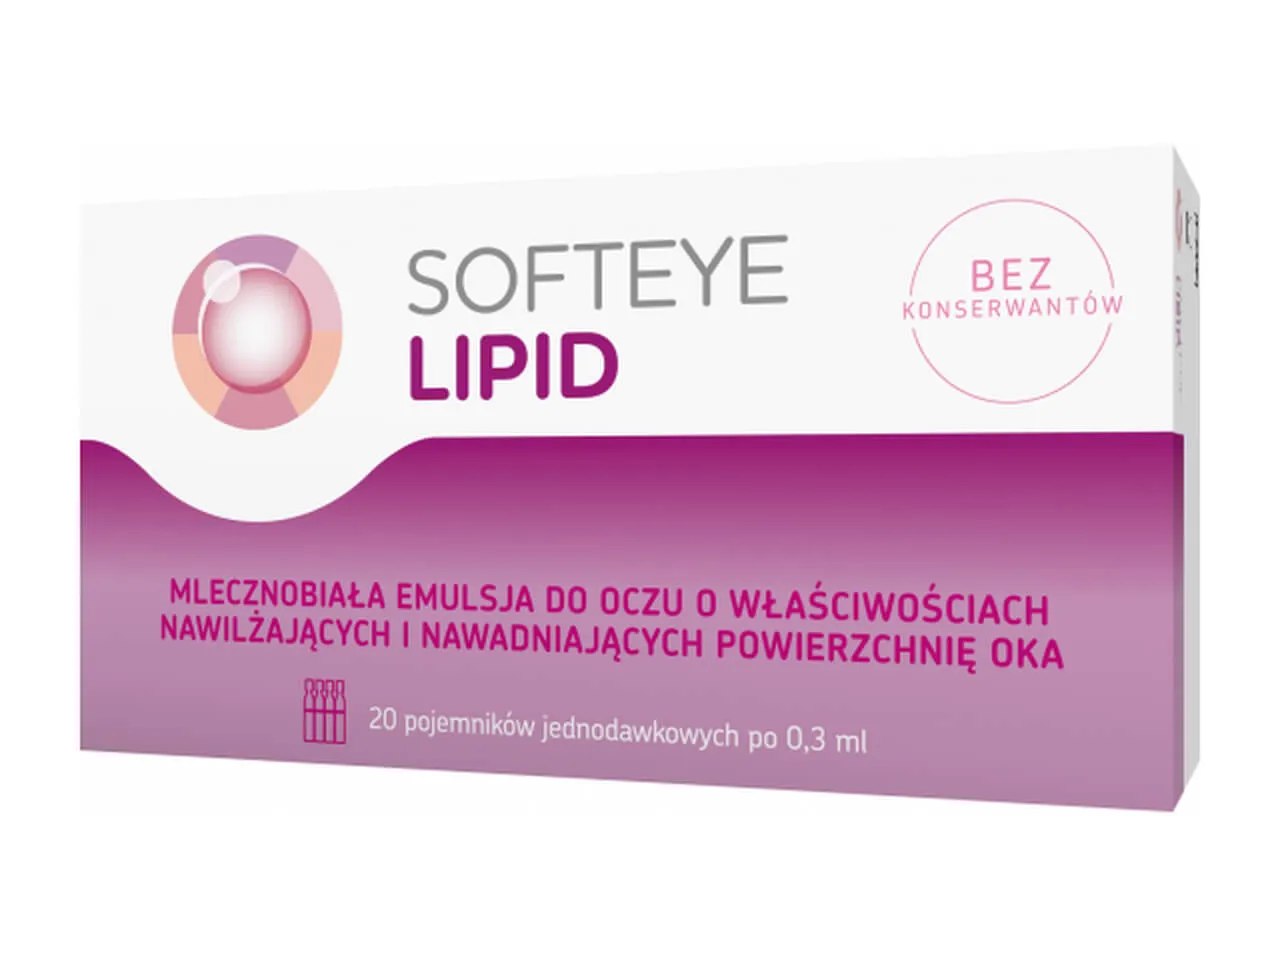 Softeye Lipid, 0,3 ml, 20 pojemników